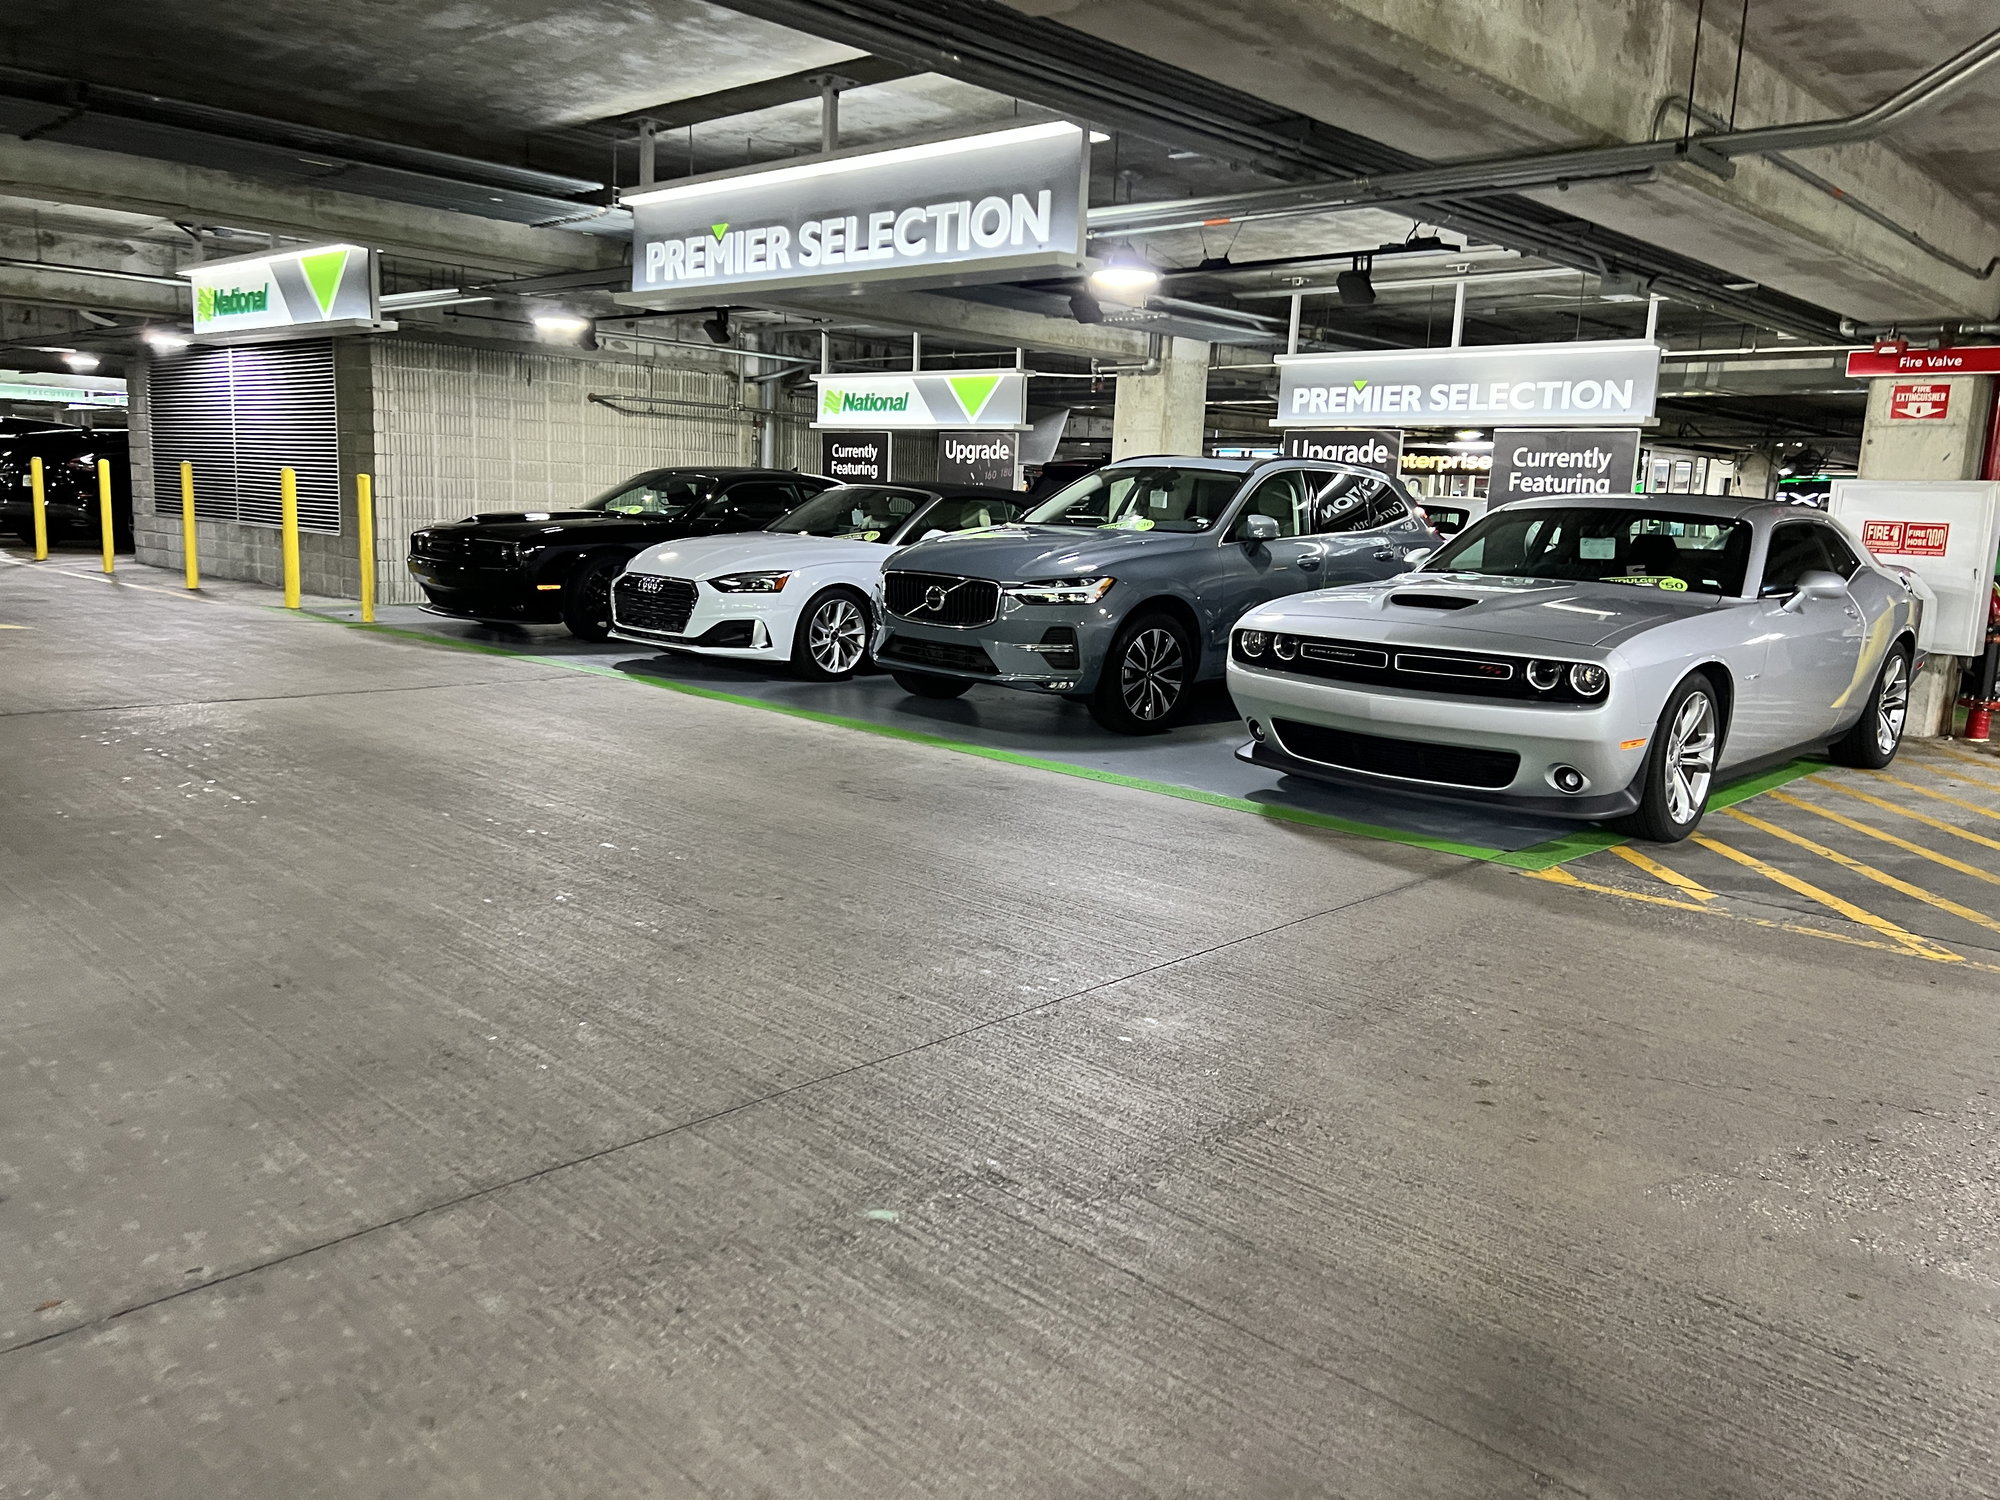 Clubs Car Rental at Orlando Airport Reviews: Rating 6/10